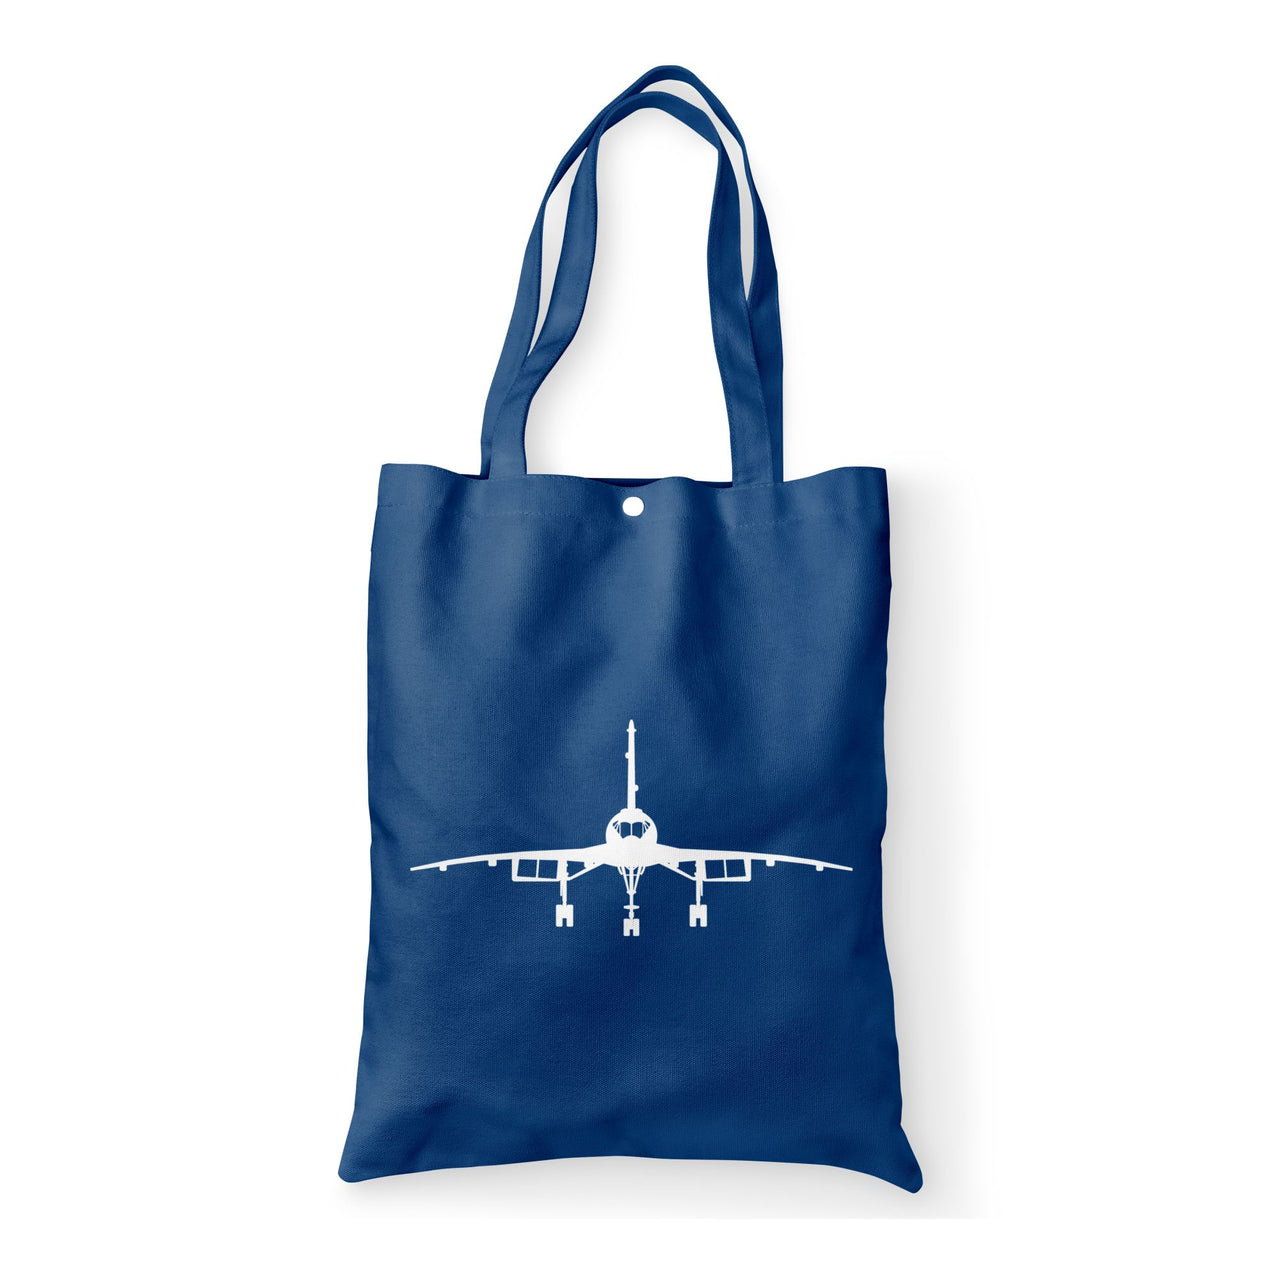 Concorde Silhouette Designed Tote Bags